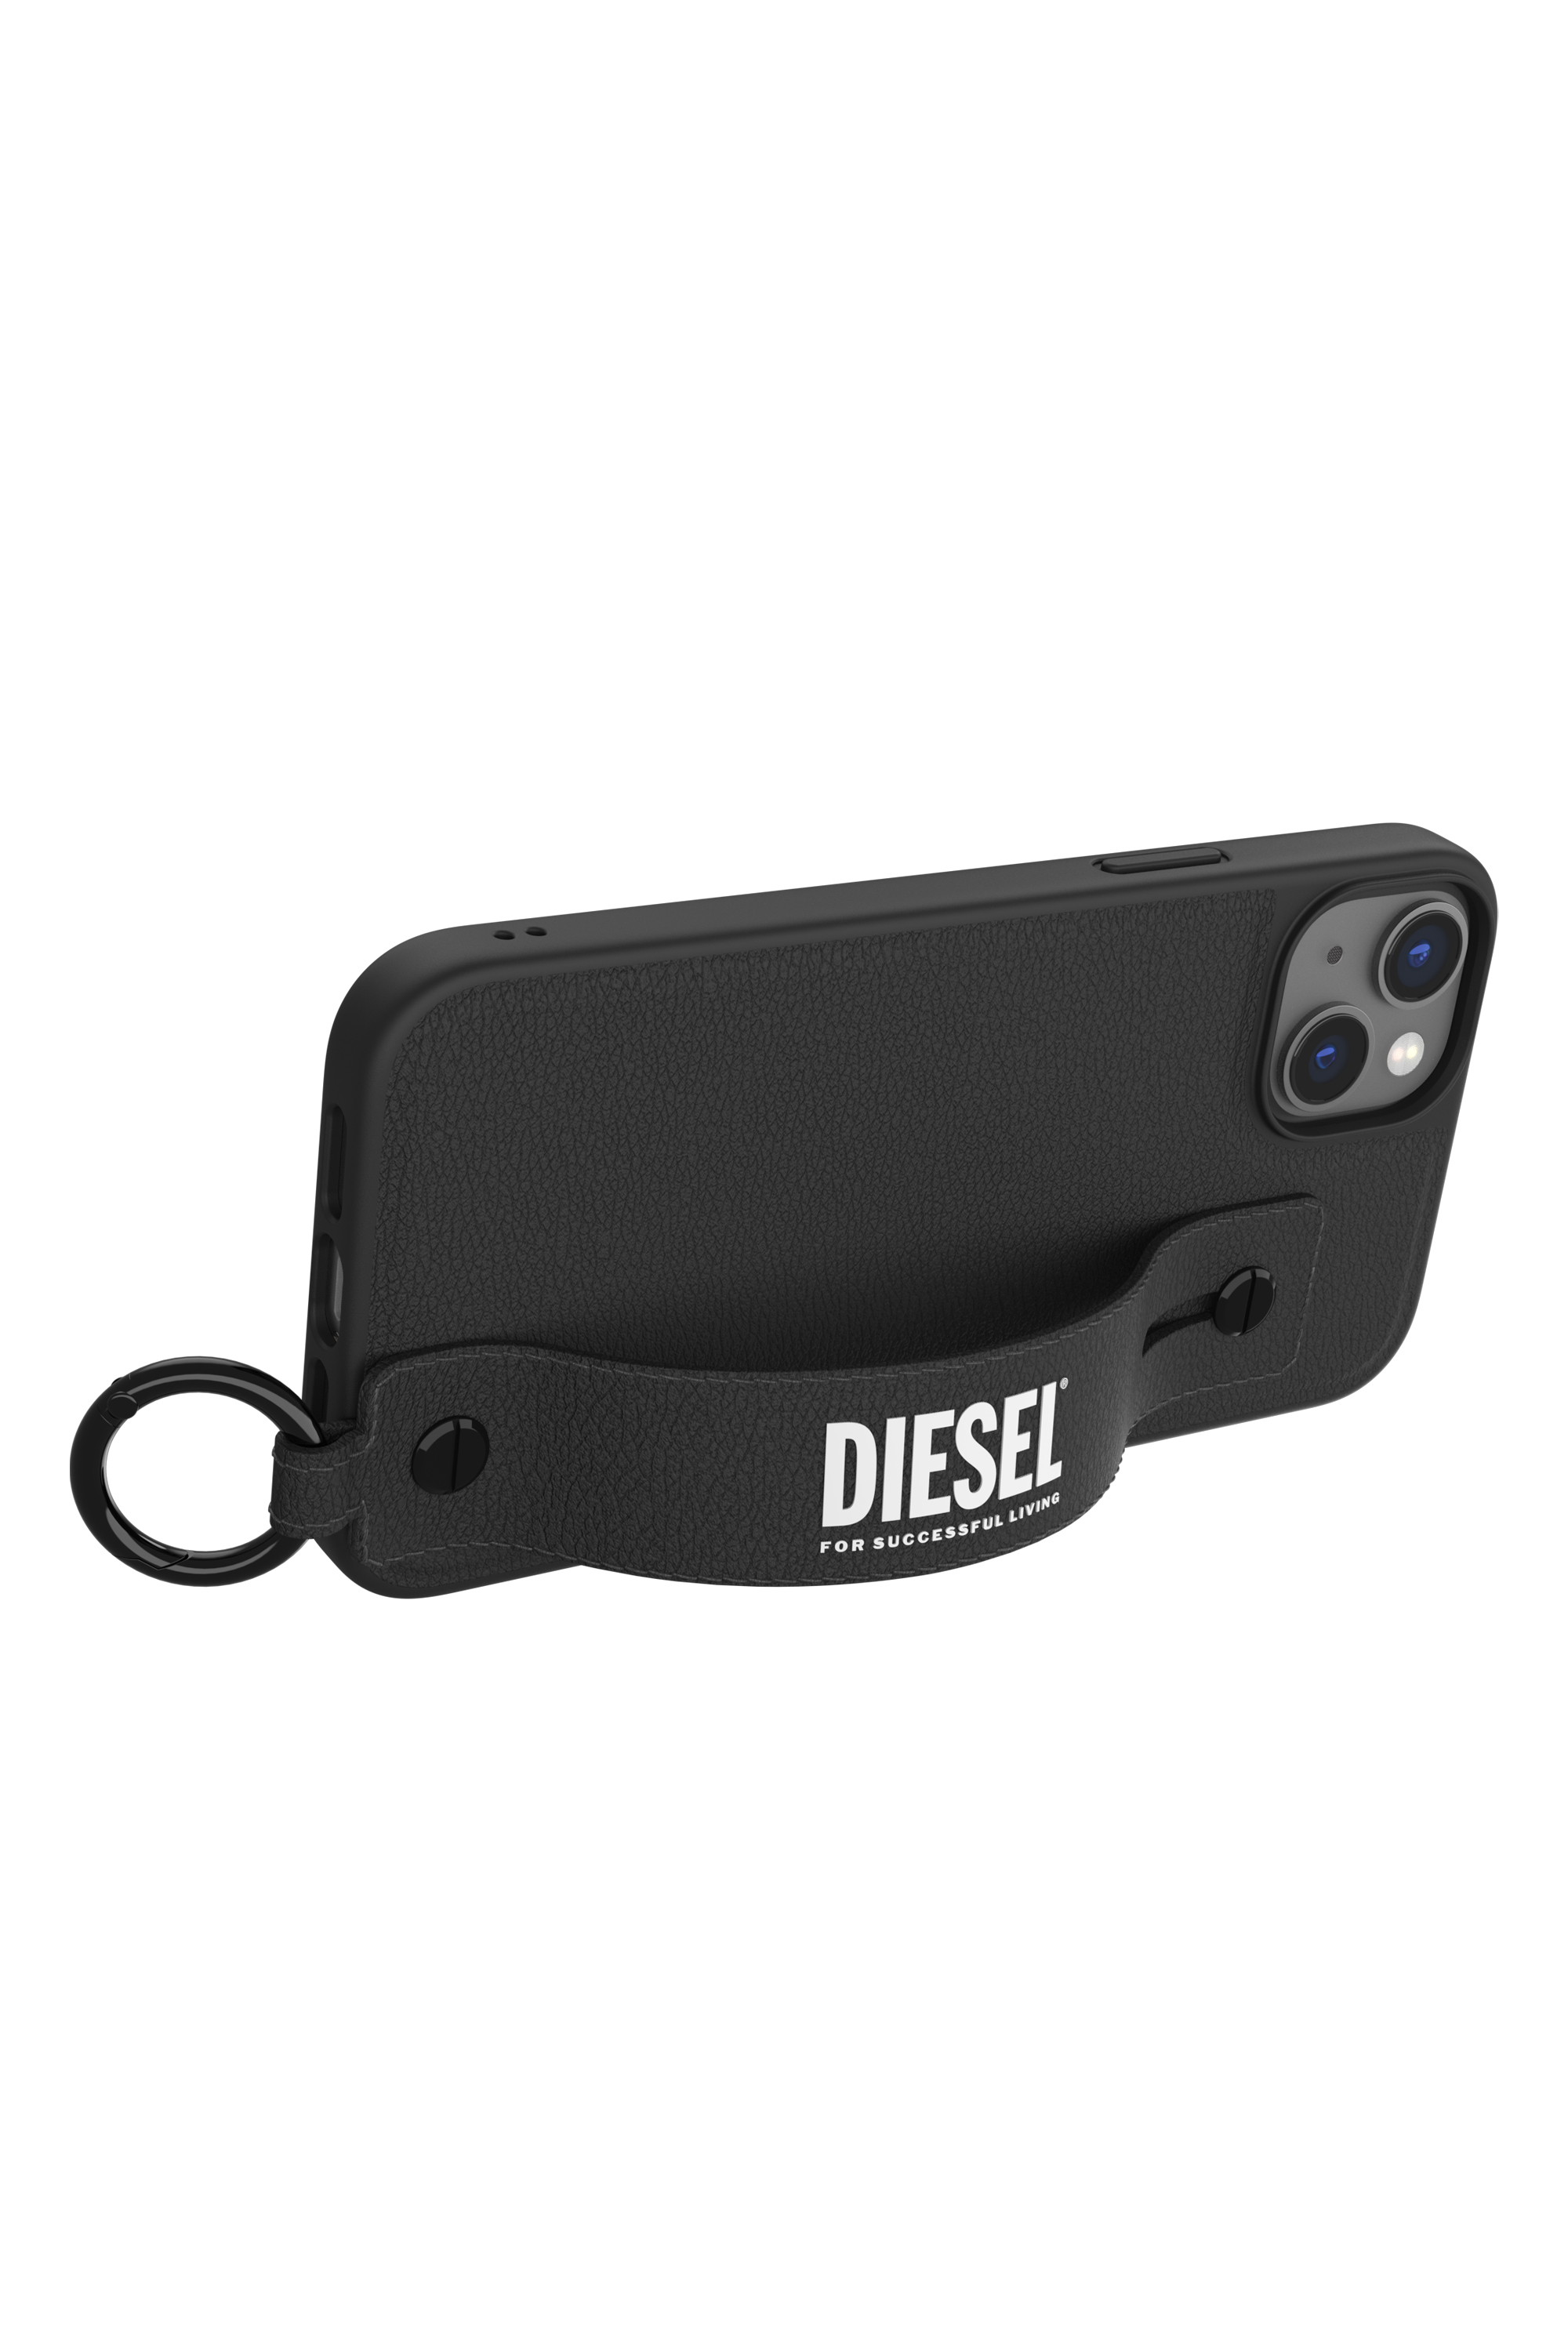 Diesel - 50285 MOULDED CASE, Nero - Image 5